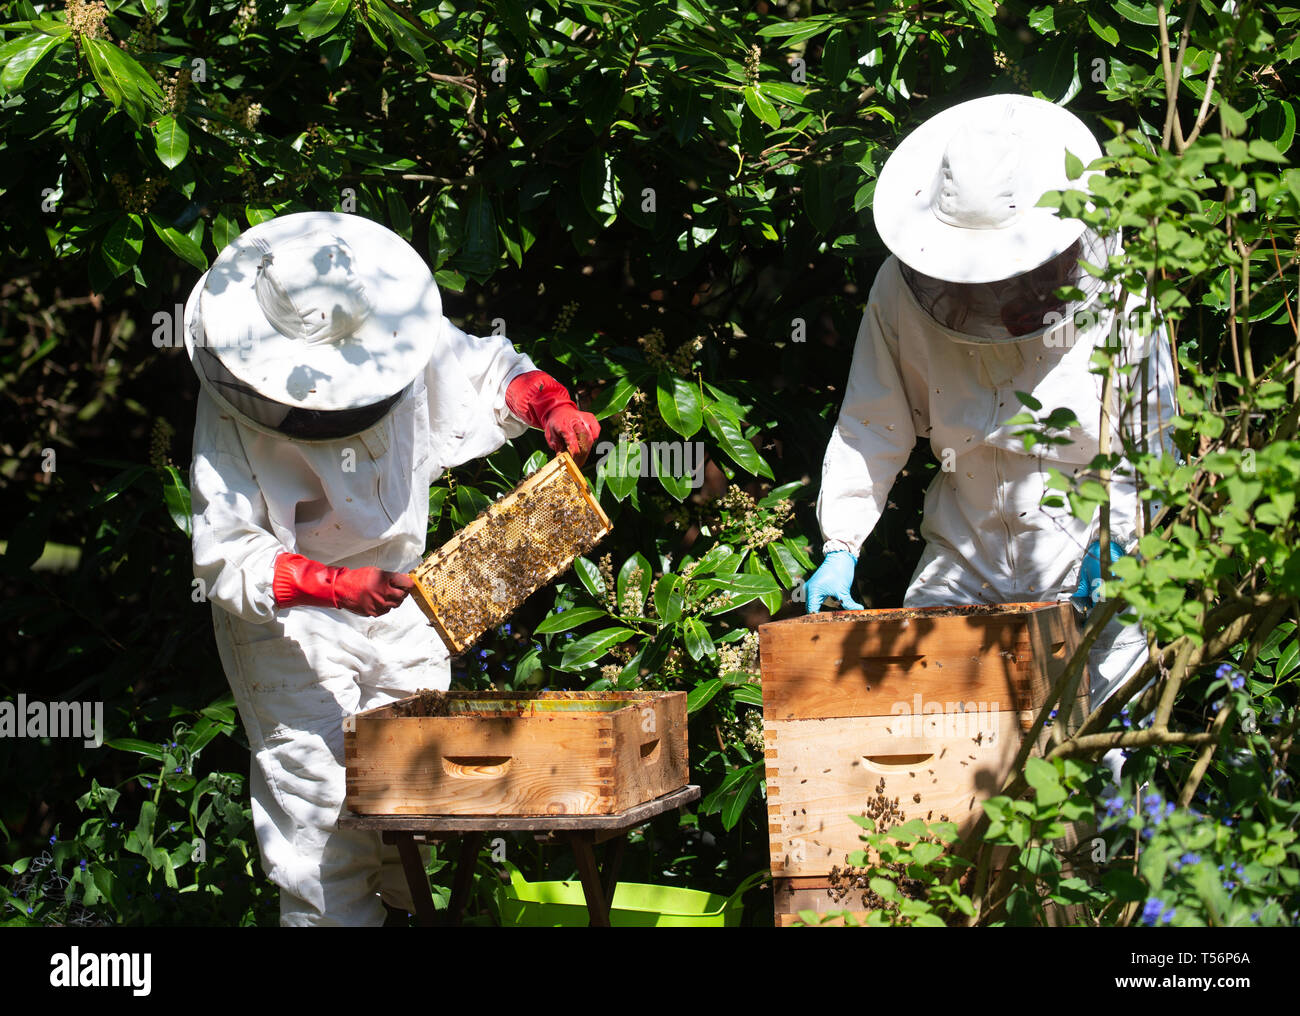 Imker neigen dazu, ihre Bienenstöcke in Suffolk, England. Sie Rauch leicht sedieren, die Bienen, um sie zu beruhigen. Stockfoto